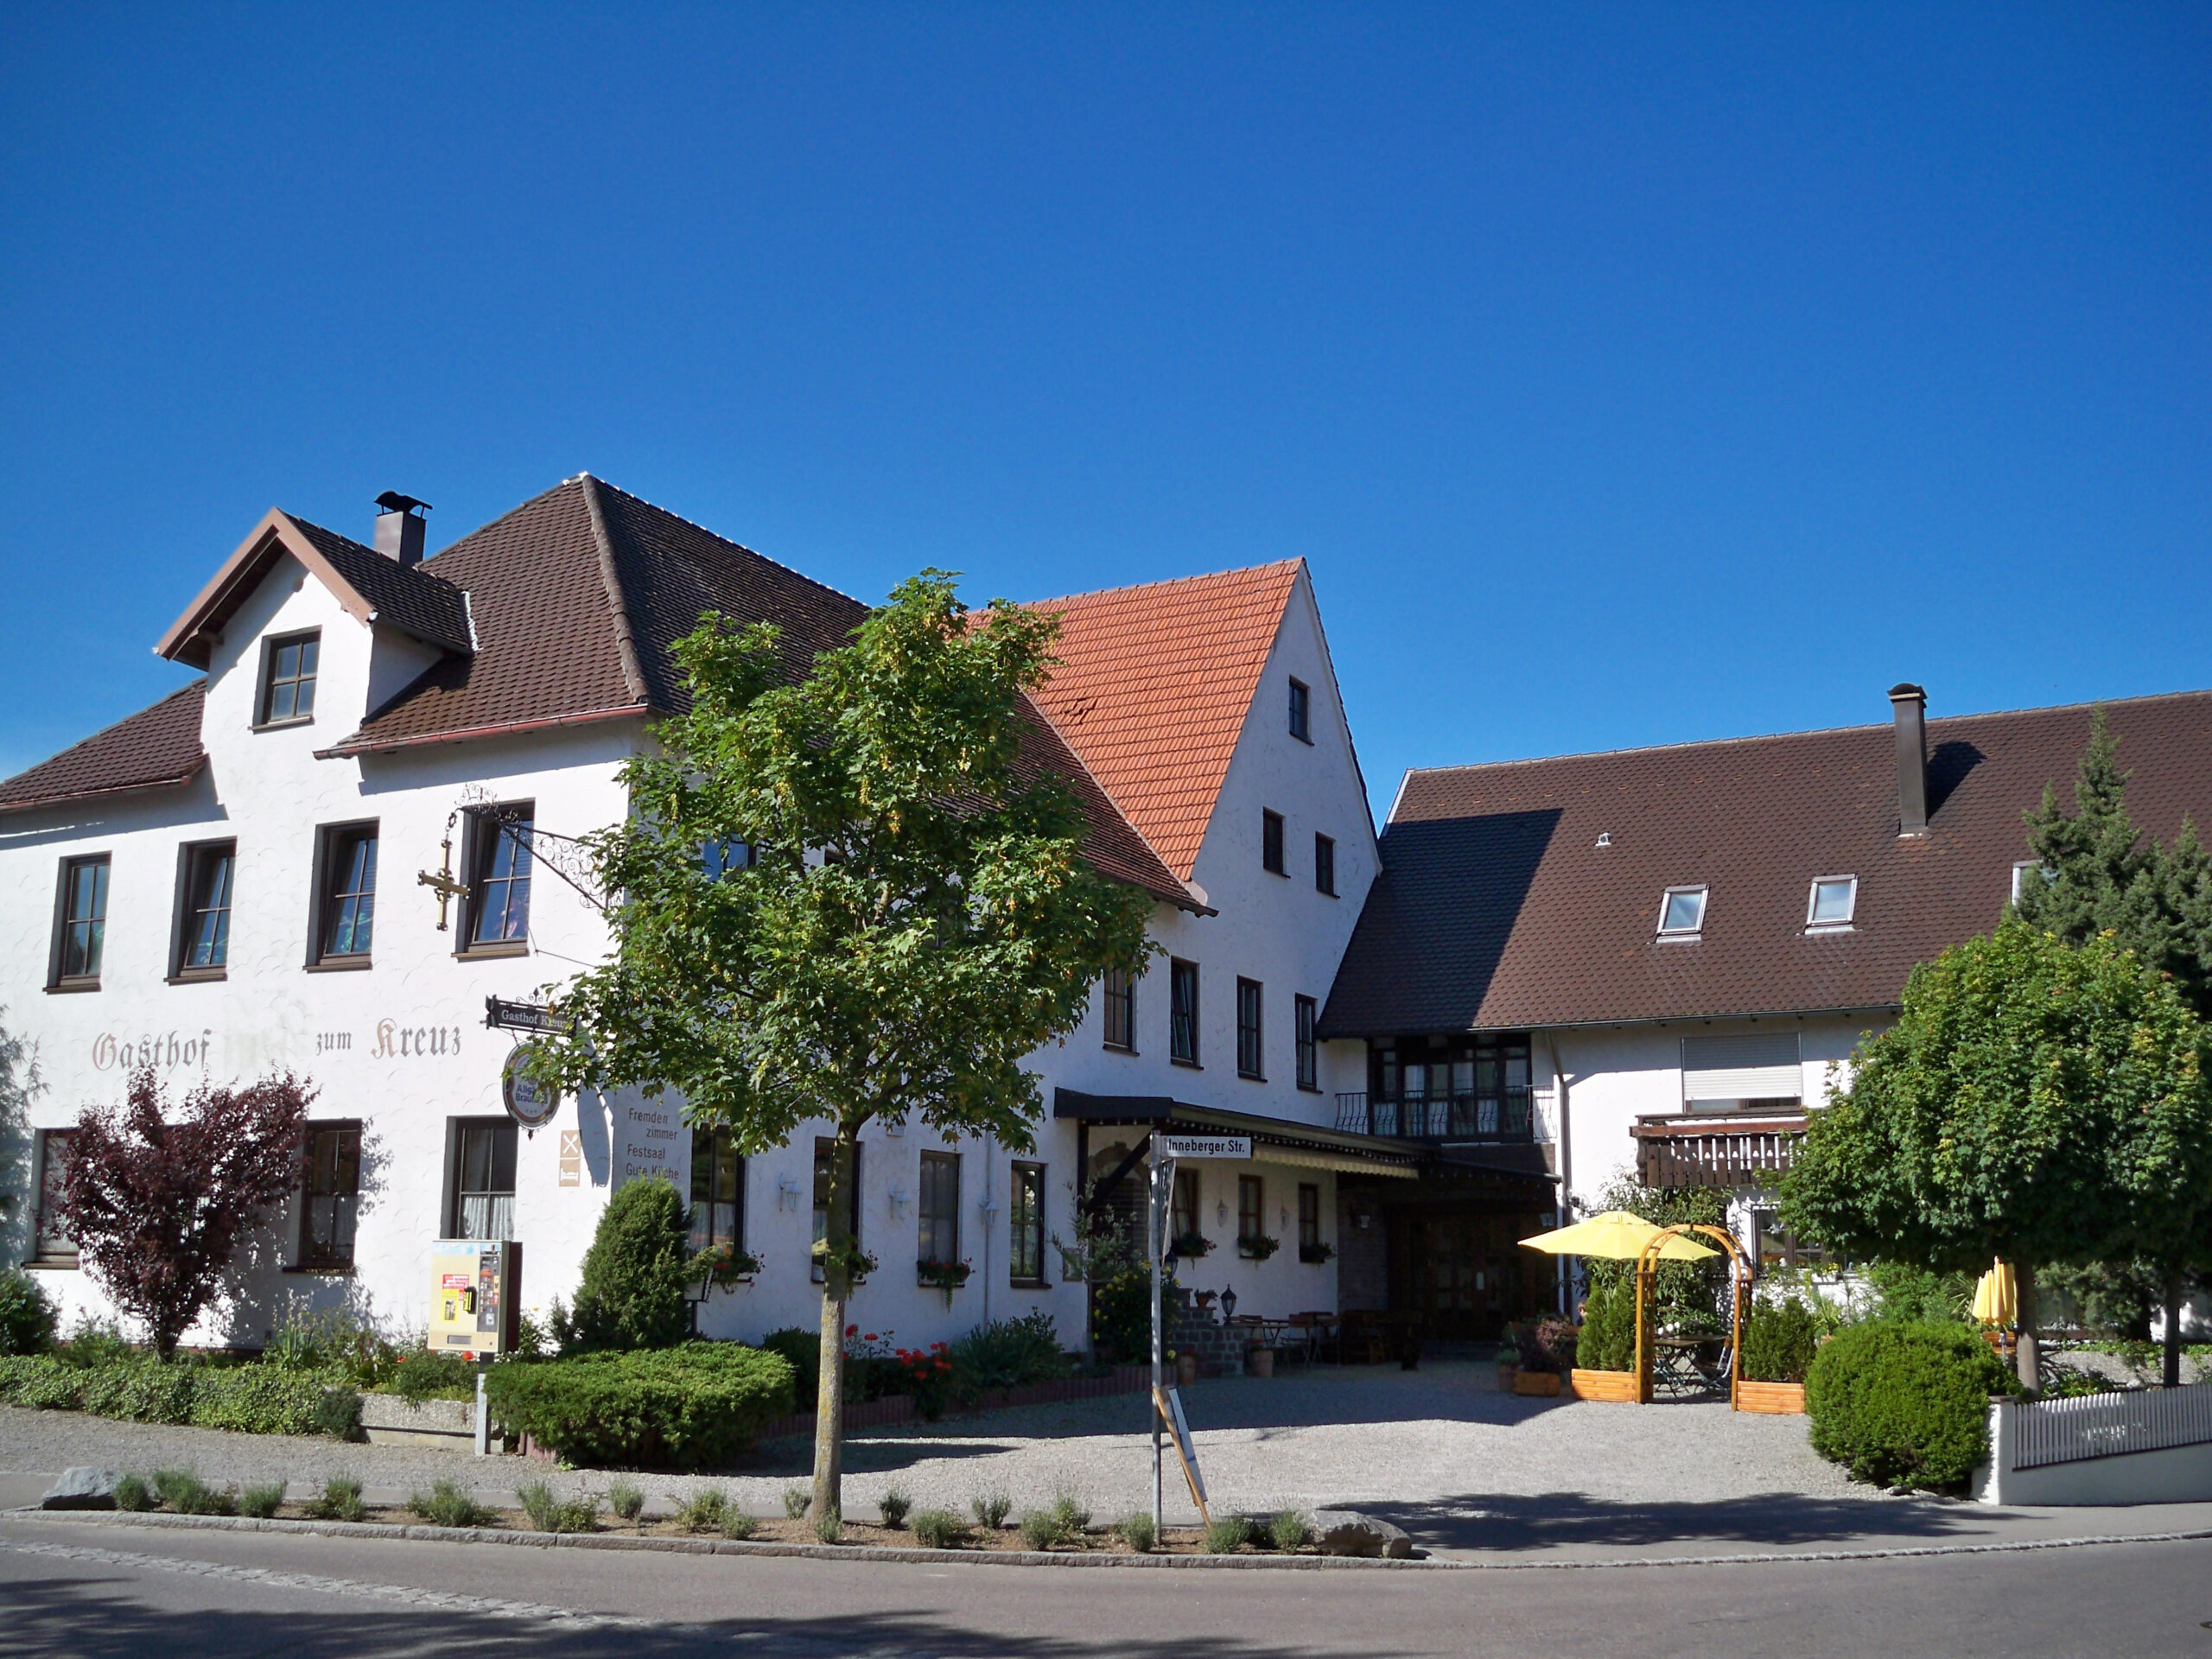 Gasthof & Gästezimmer zum Kreuz in Egg bei Berkheim